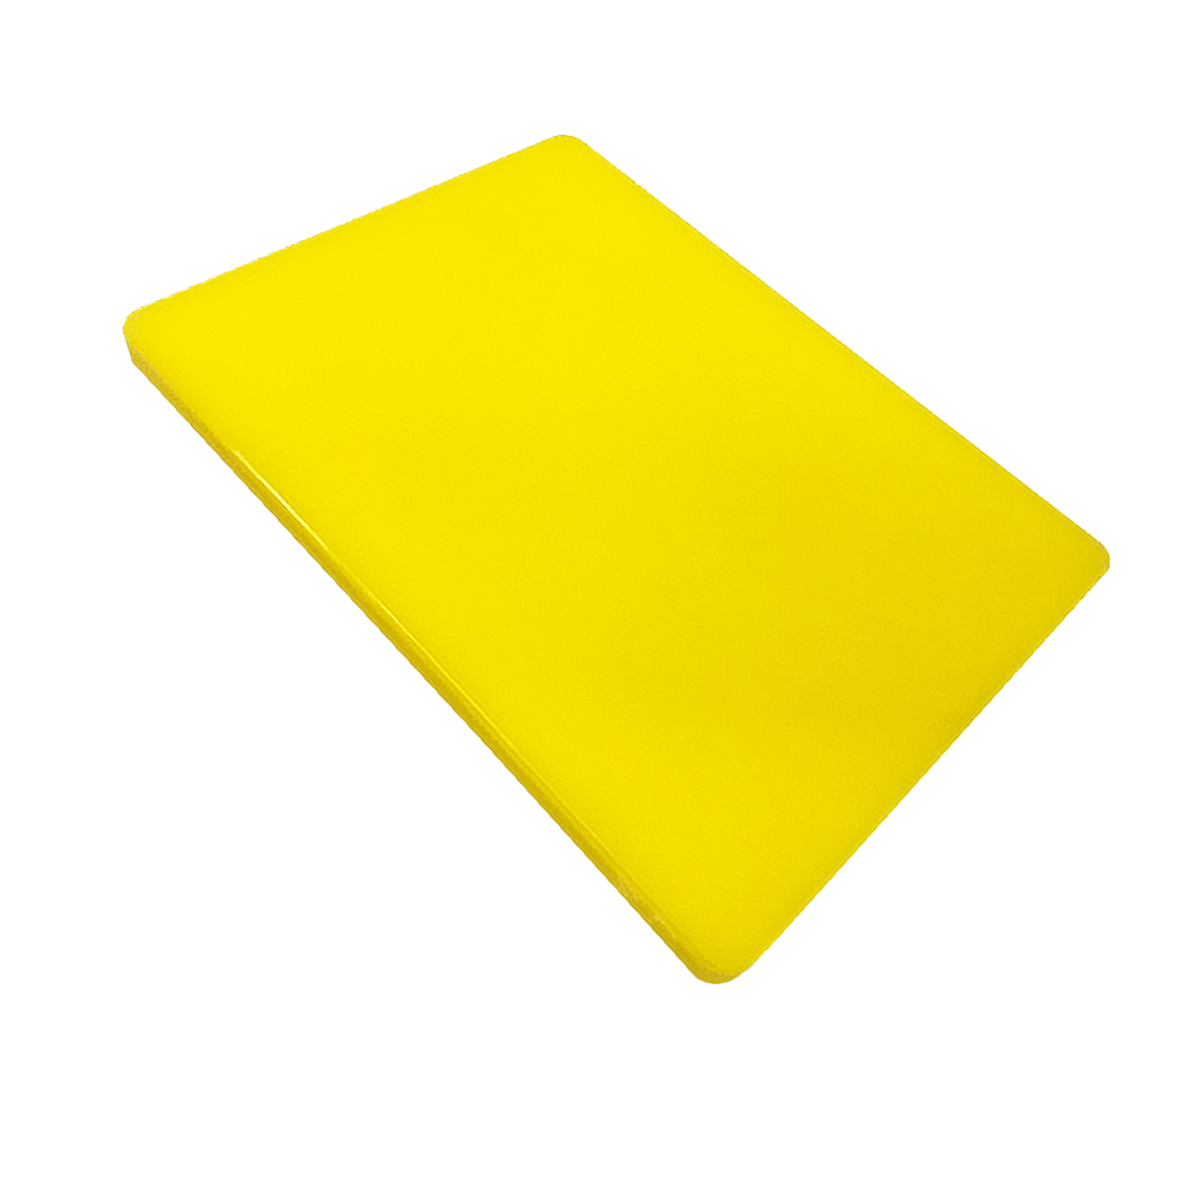 เขียงพลาสติก PE ทรงเหลี่ยม COMBI WARE 40 x 30 x 2 ซม. สีเหลือง เหมาะกับงานหั่น งานสับ และเฉือน